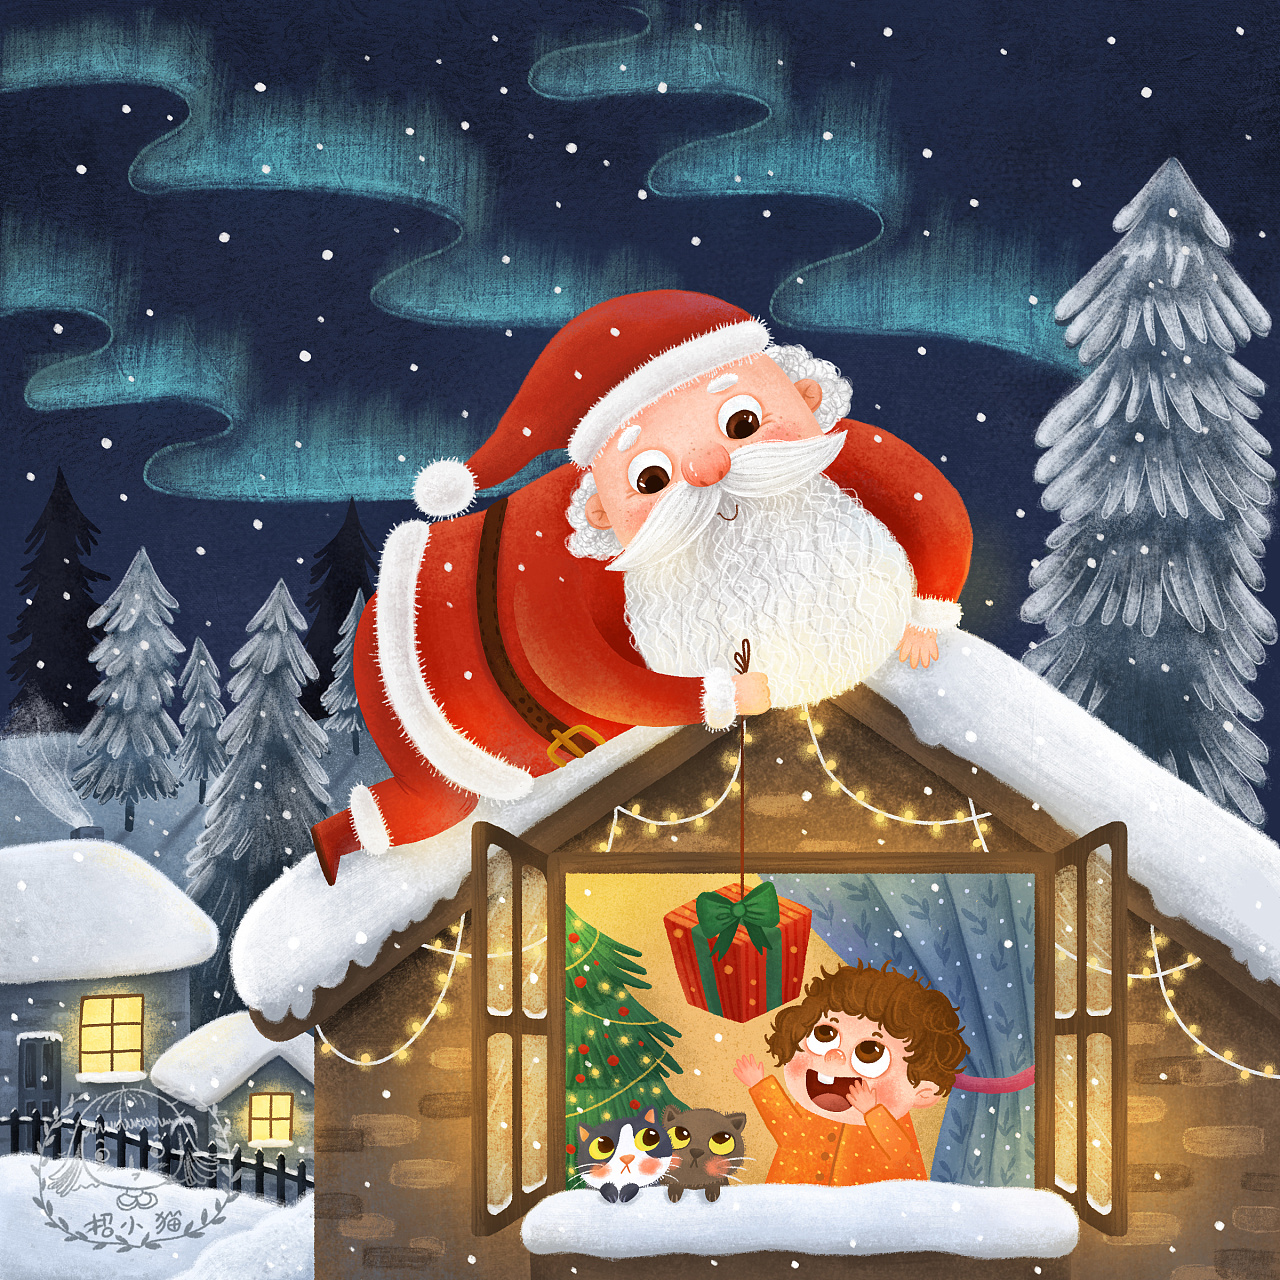 Santa Claus Hand PNG Image, Hand Drawn Cartoon Santa Claus, Santa Clipart, Winter, Festival PNG ...